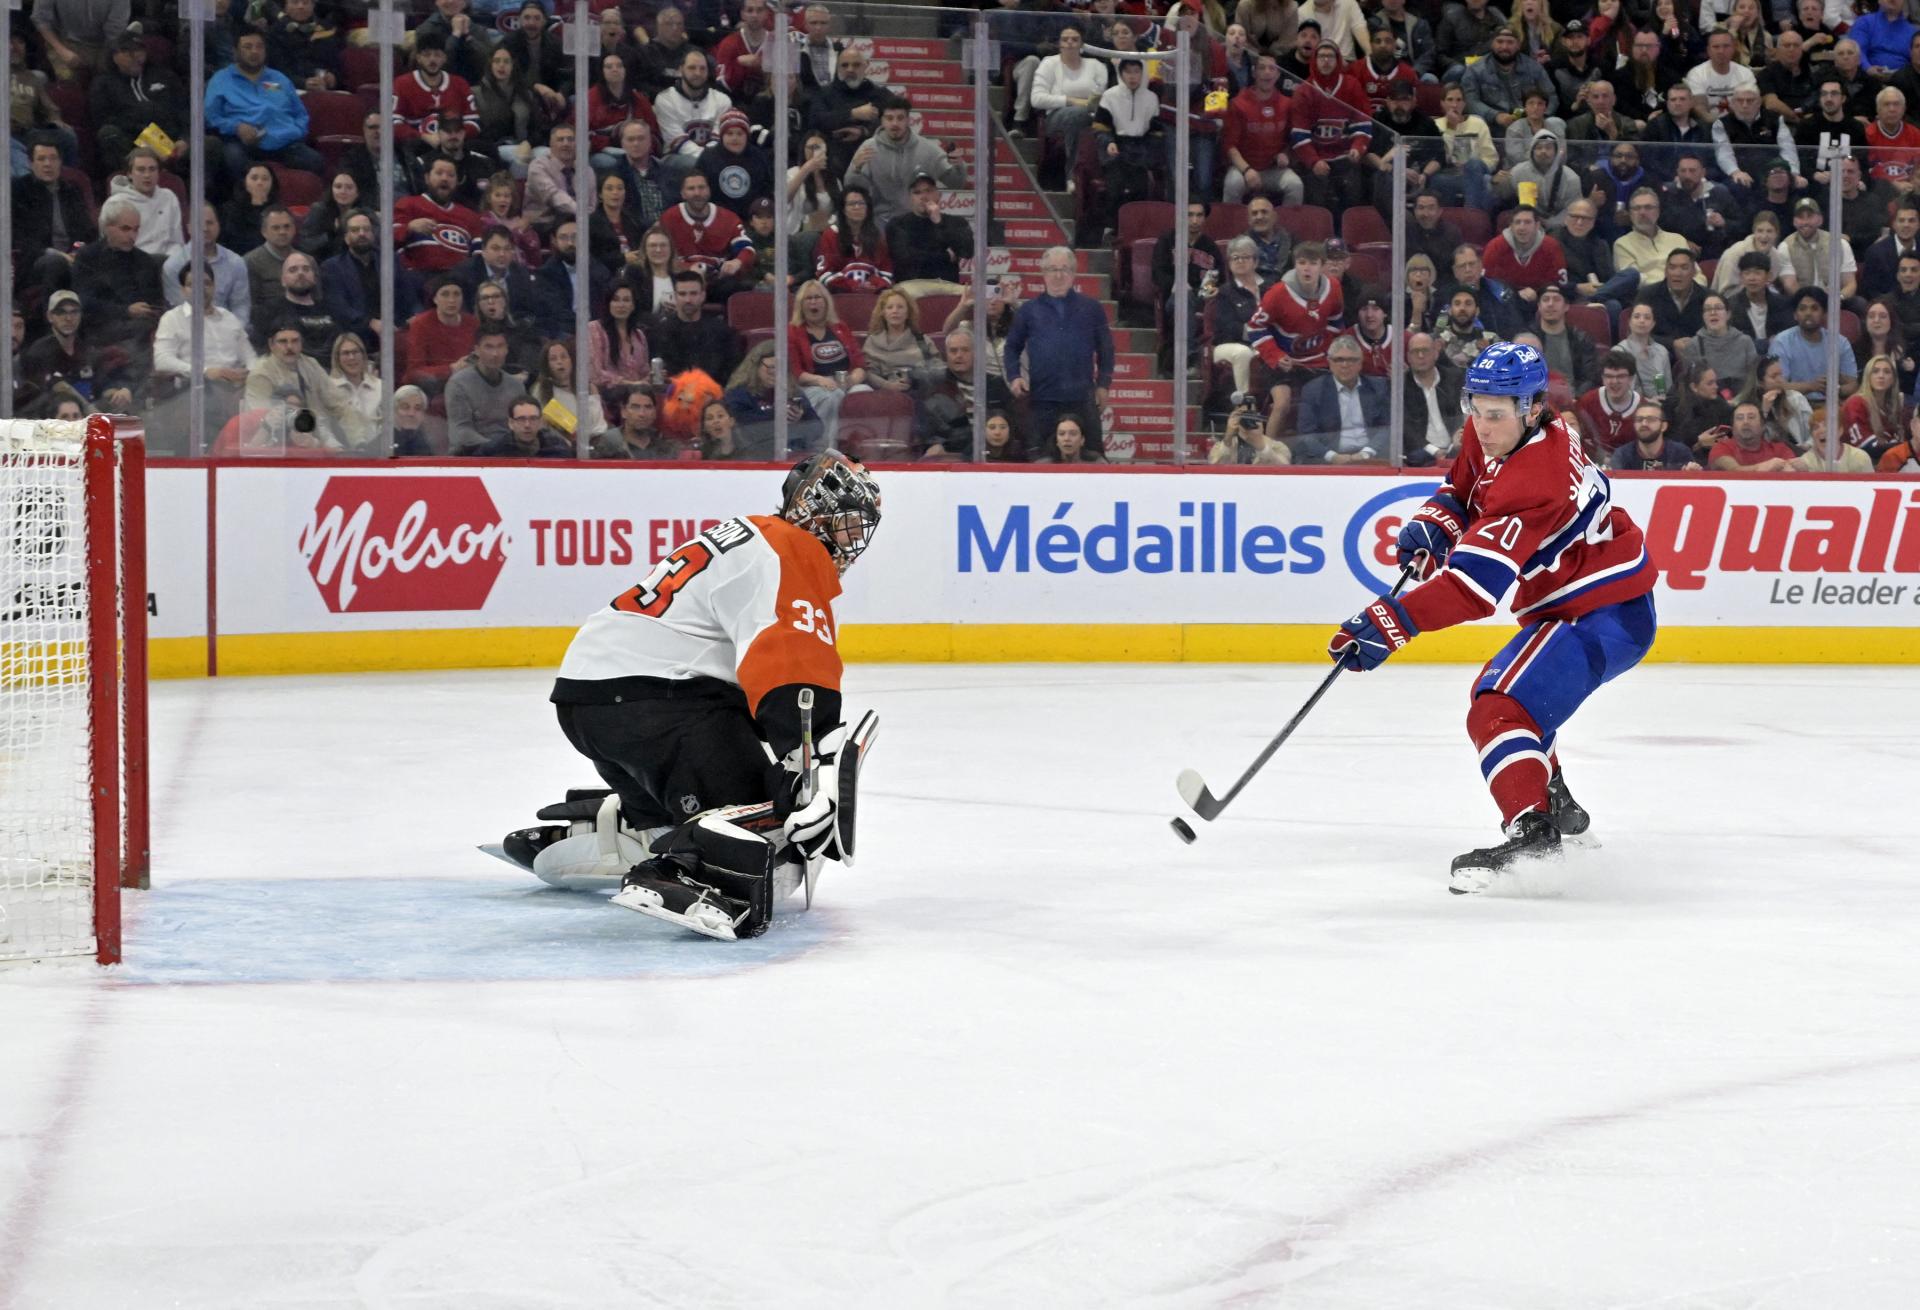 VIDEO: Slafkovský strelil prvý hetrik v NHL, jeho tím suverénne triumfoval. Černák si pripísal asistenciu